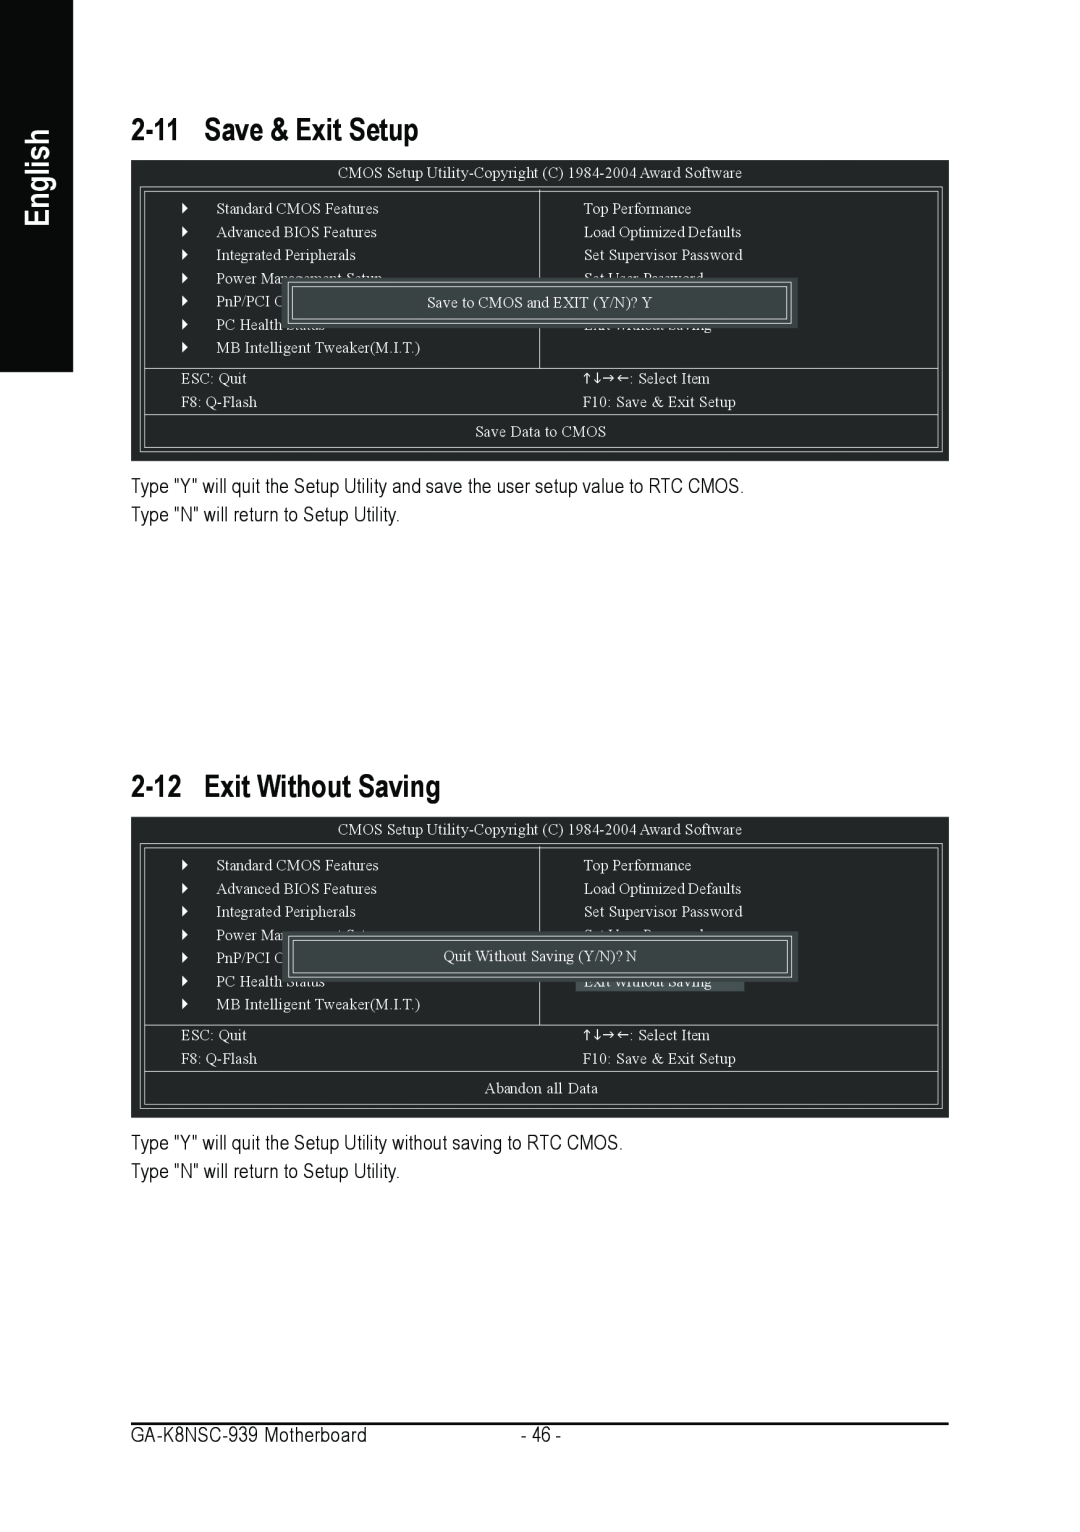 AMD GA-K8NSC-939 user manual Save & Exit Setup, Exit Without Saving, English 